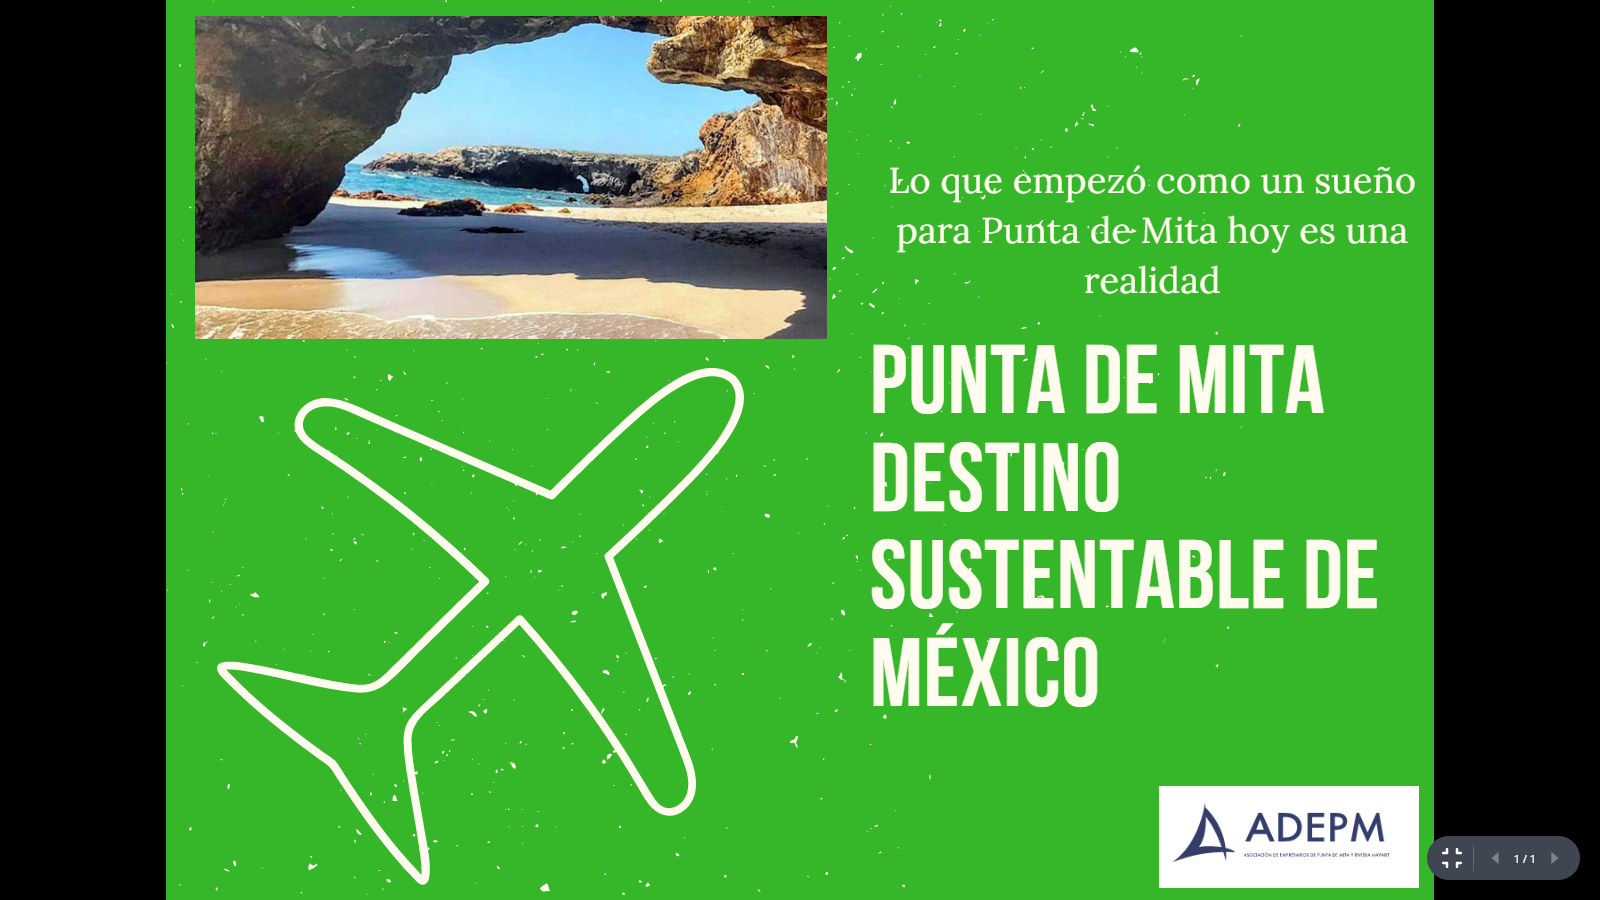 Zona de desarrollo turístico sustentable Punta de Mita, México